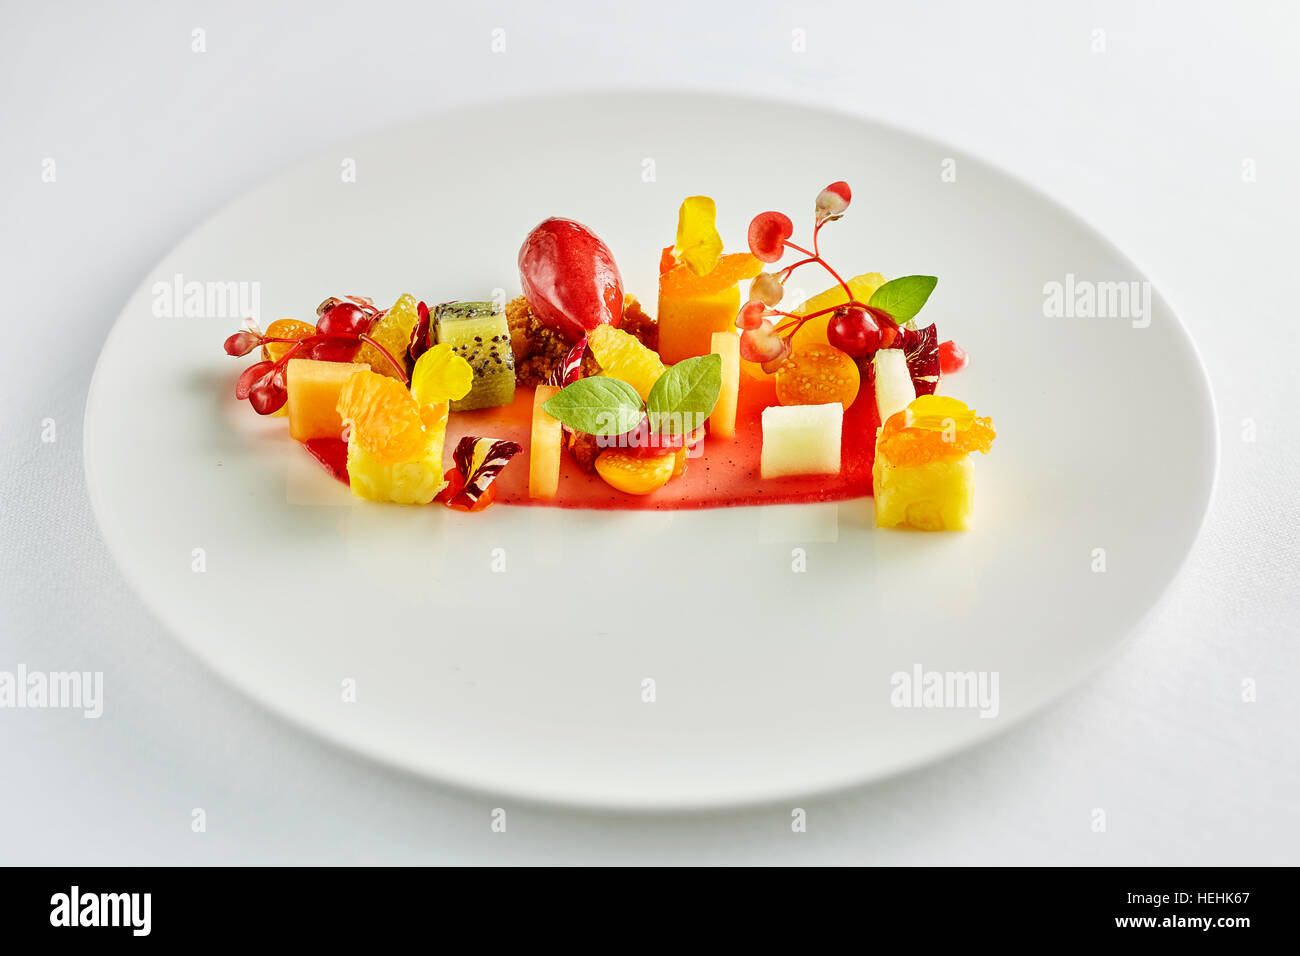 Wunderbarer Obstsalat kreativ schön zubereitete Ananas Birne Kiwi orange Erdbeere Stockfoto